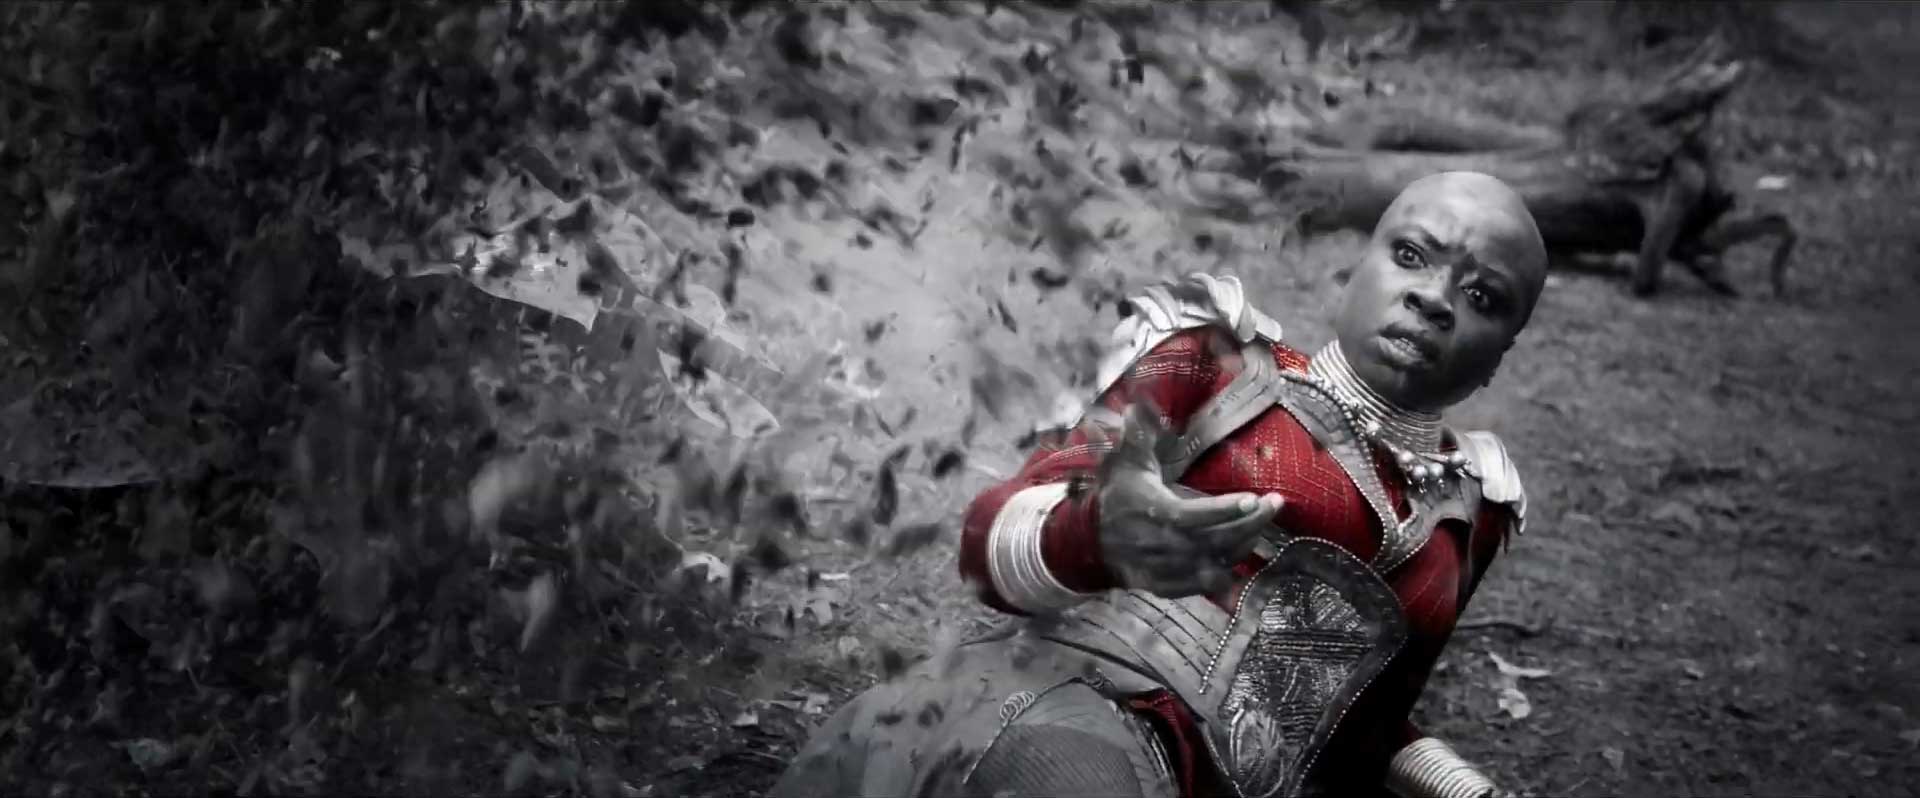 Avengers Endgame Trailer 2 Breakdown - Red Color Reality Stone